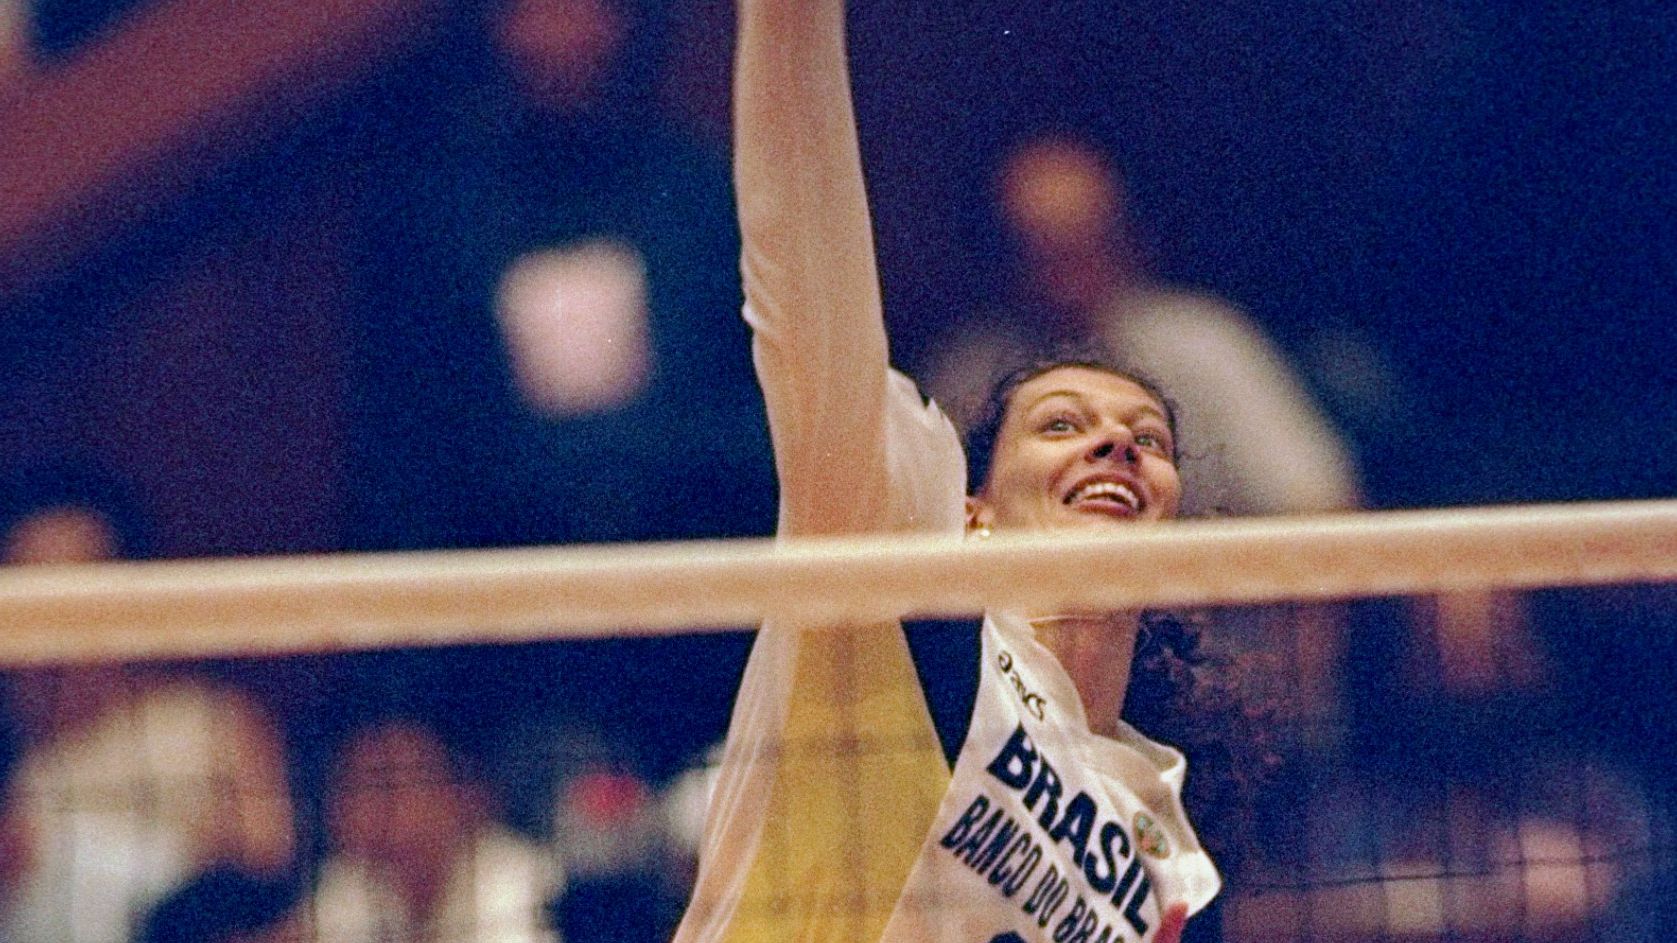 Ana Moser quando era jogadora de vôlei (Crédito: Getty Images)